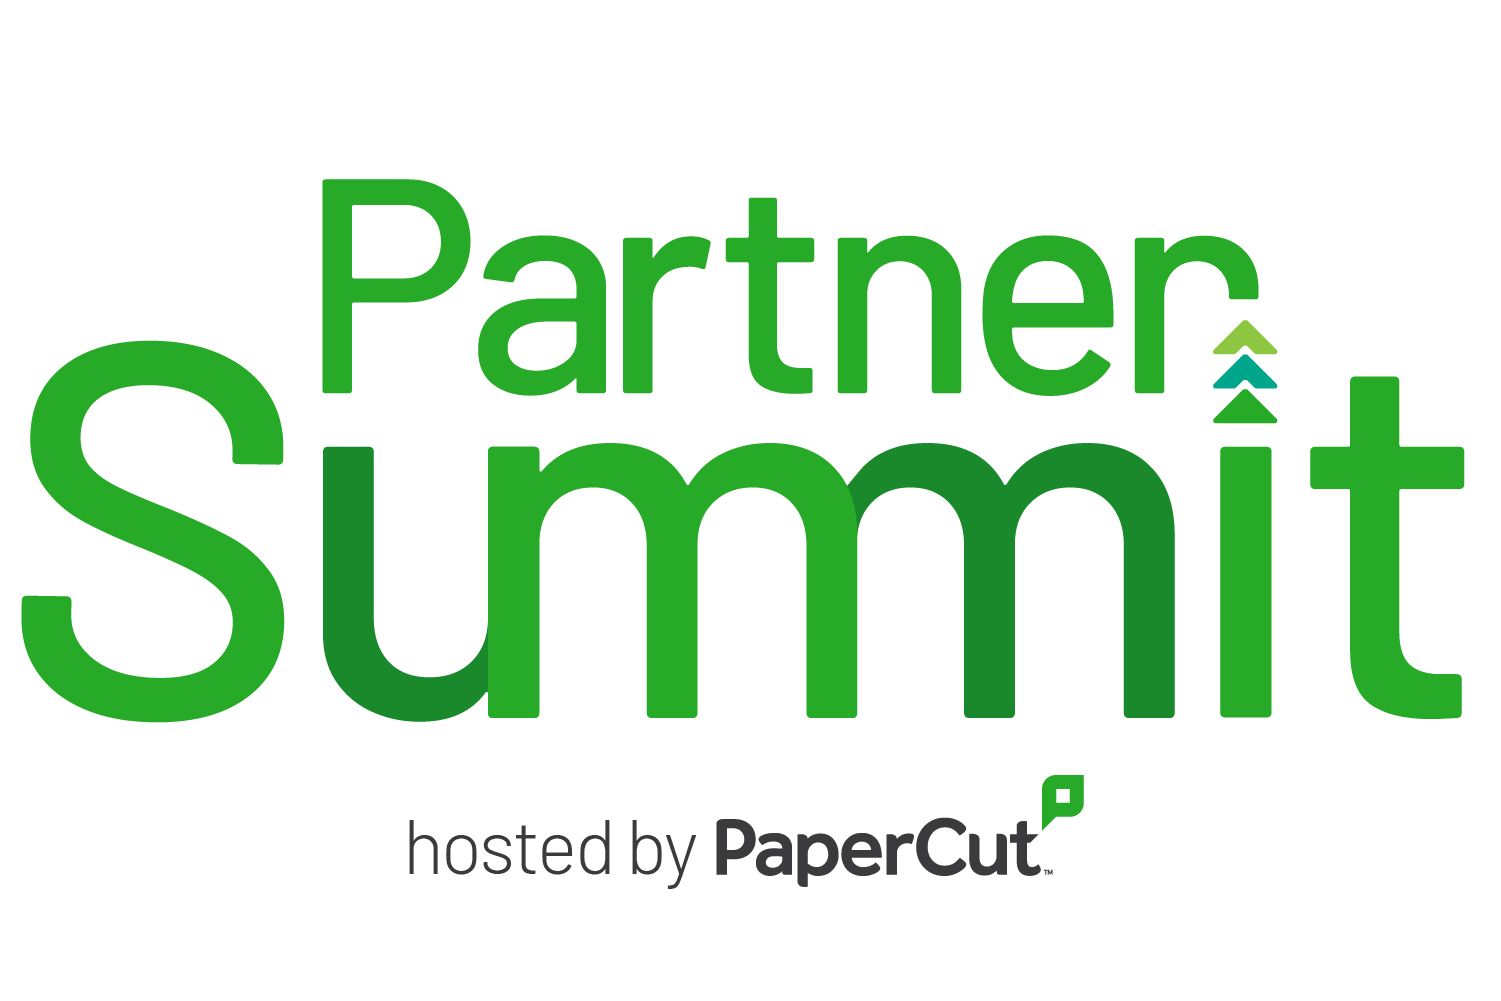 ecoprintQ PaperCut Partner Summit